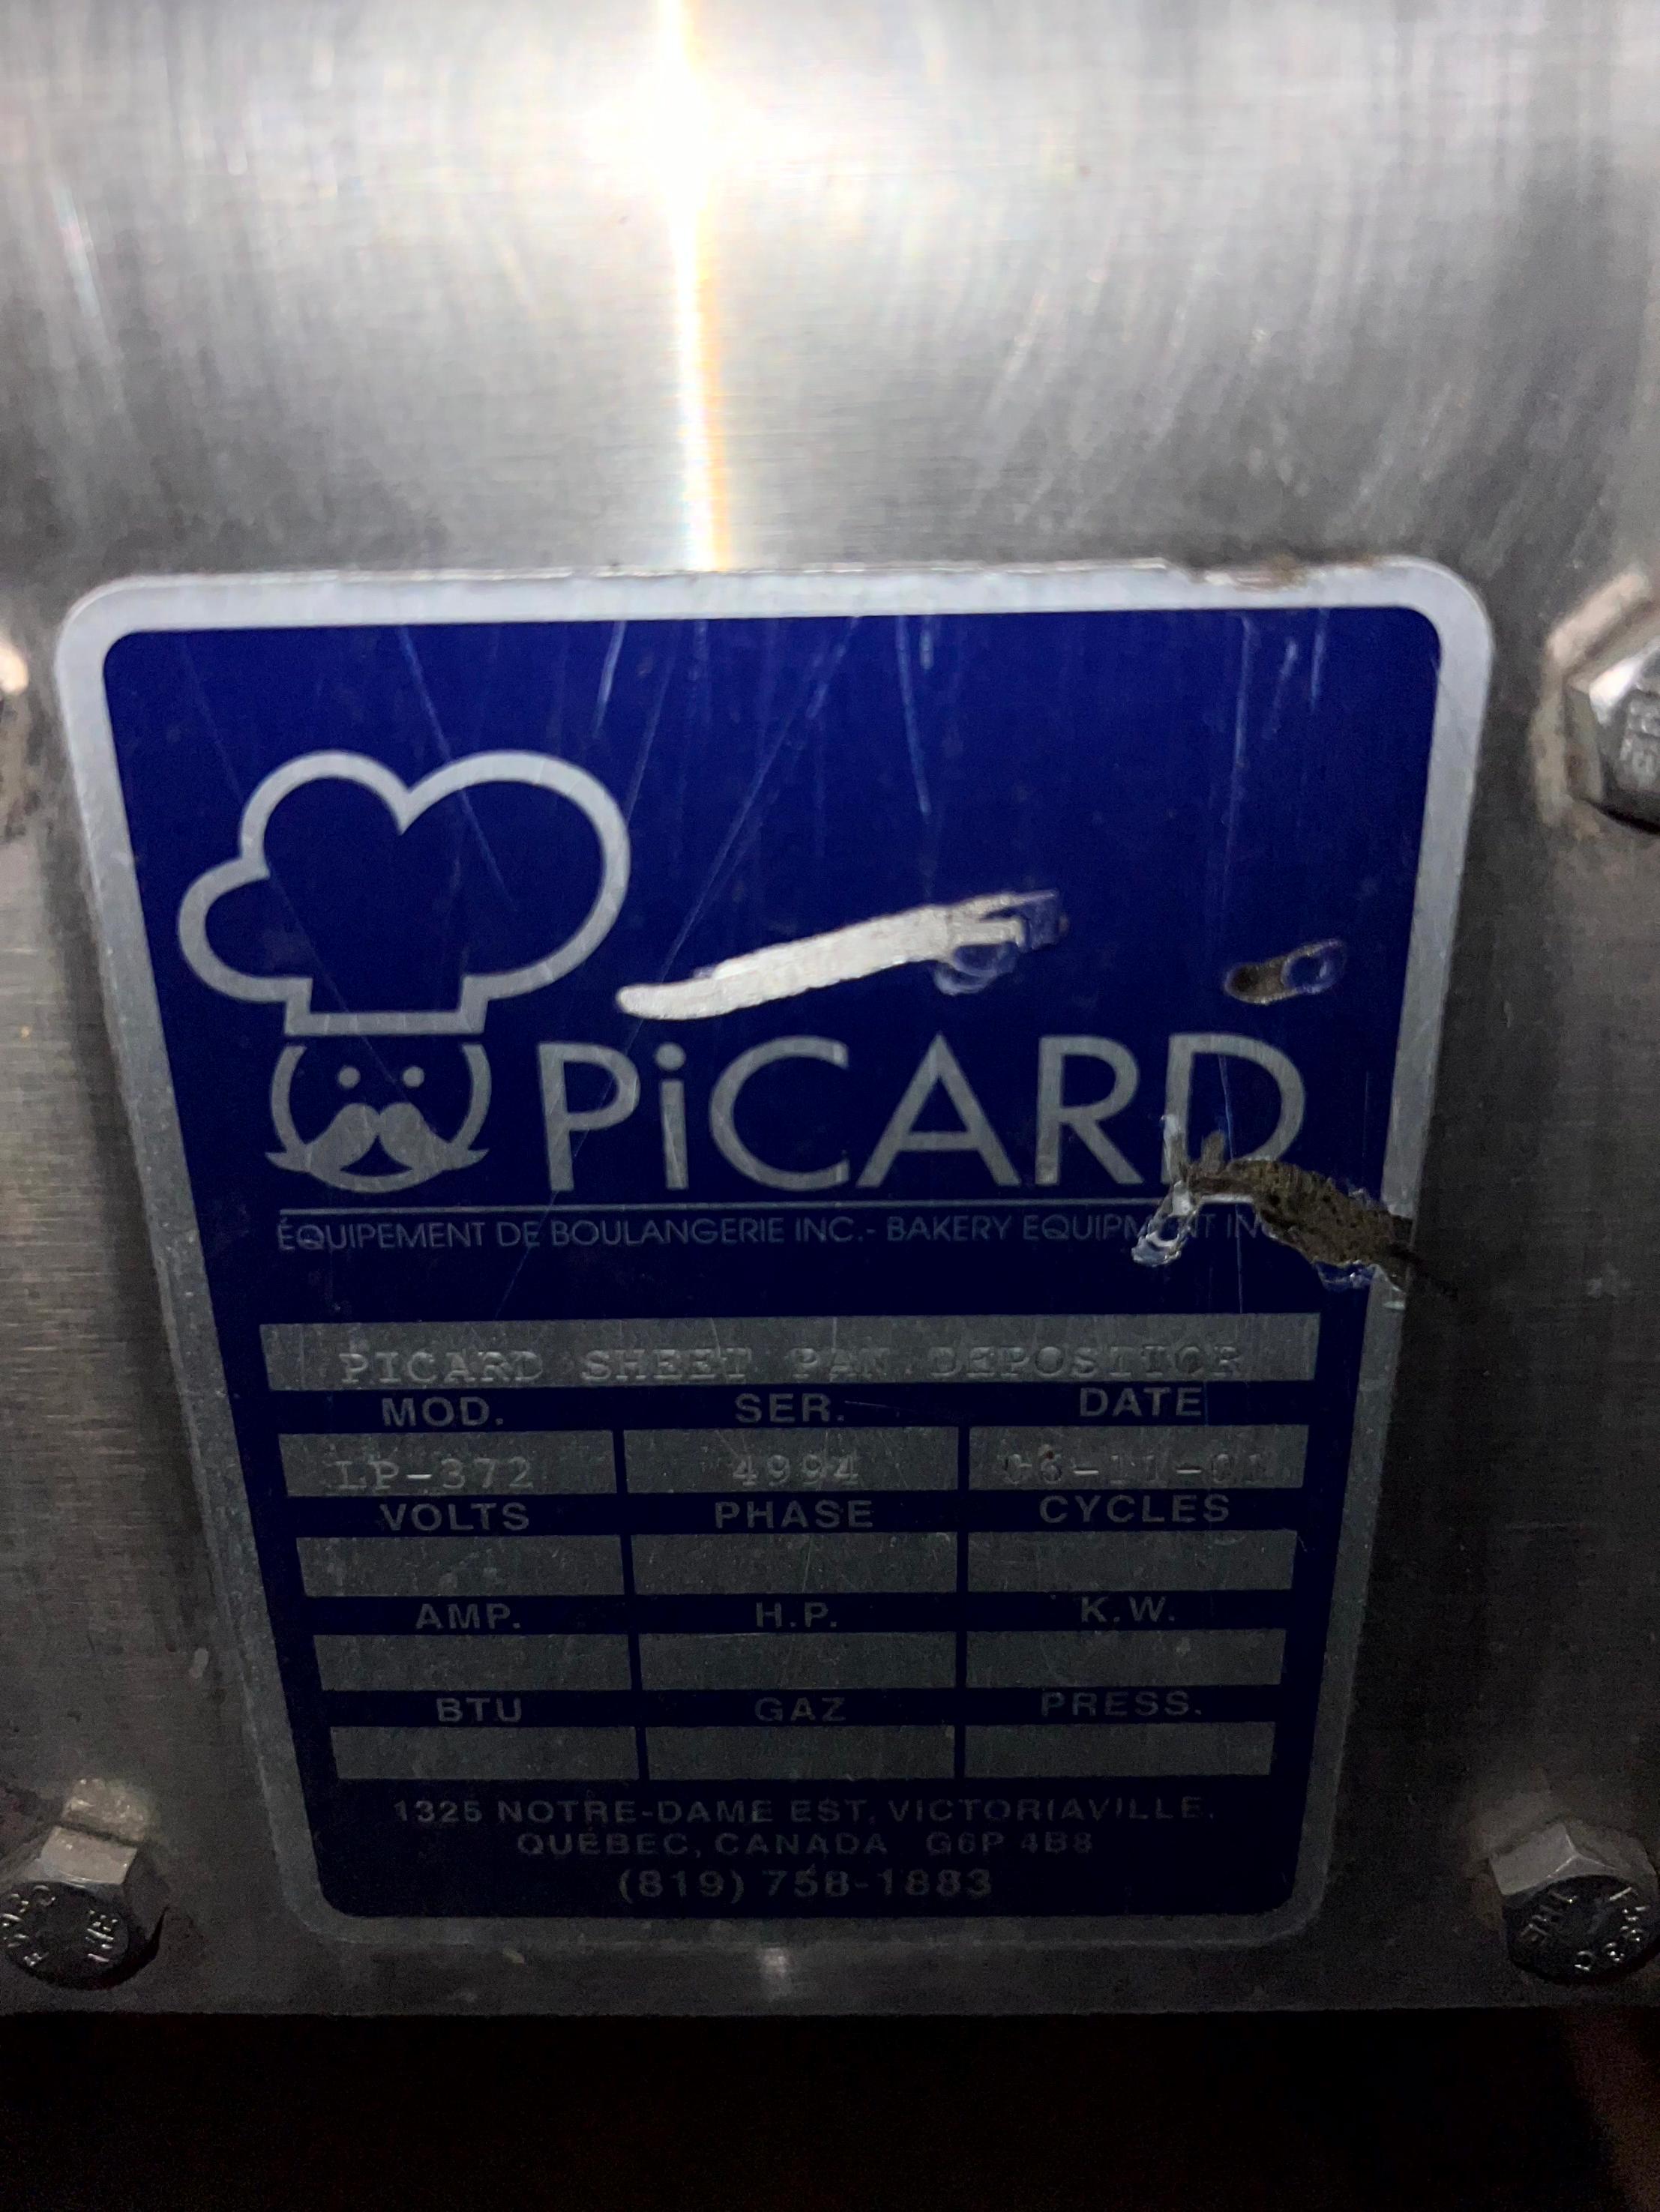 Picard Sheet Pan Depositor